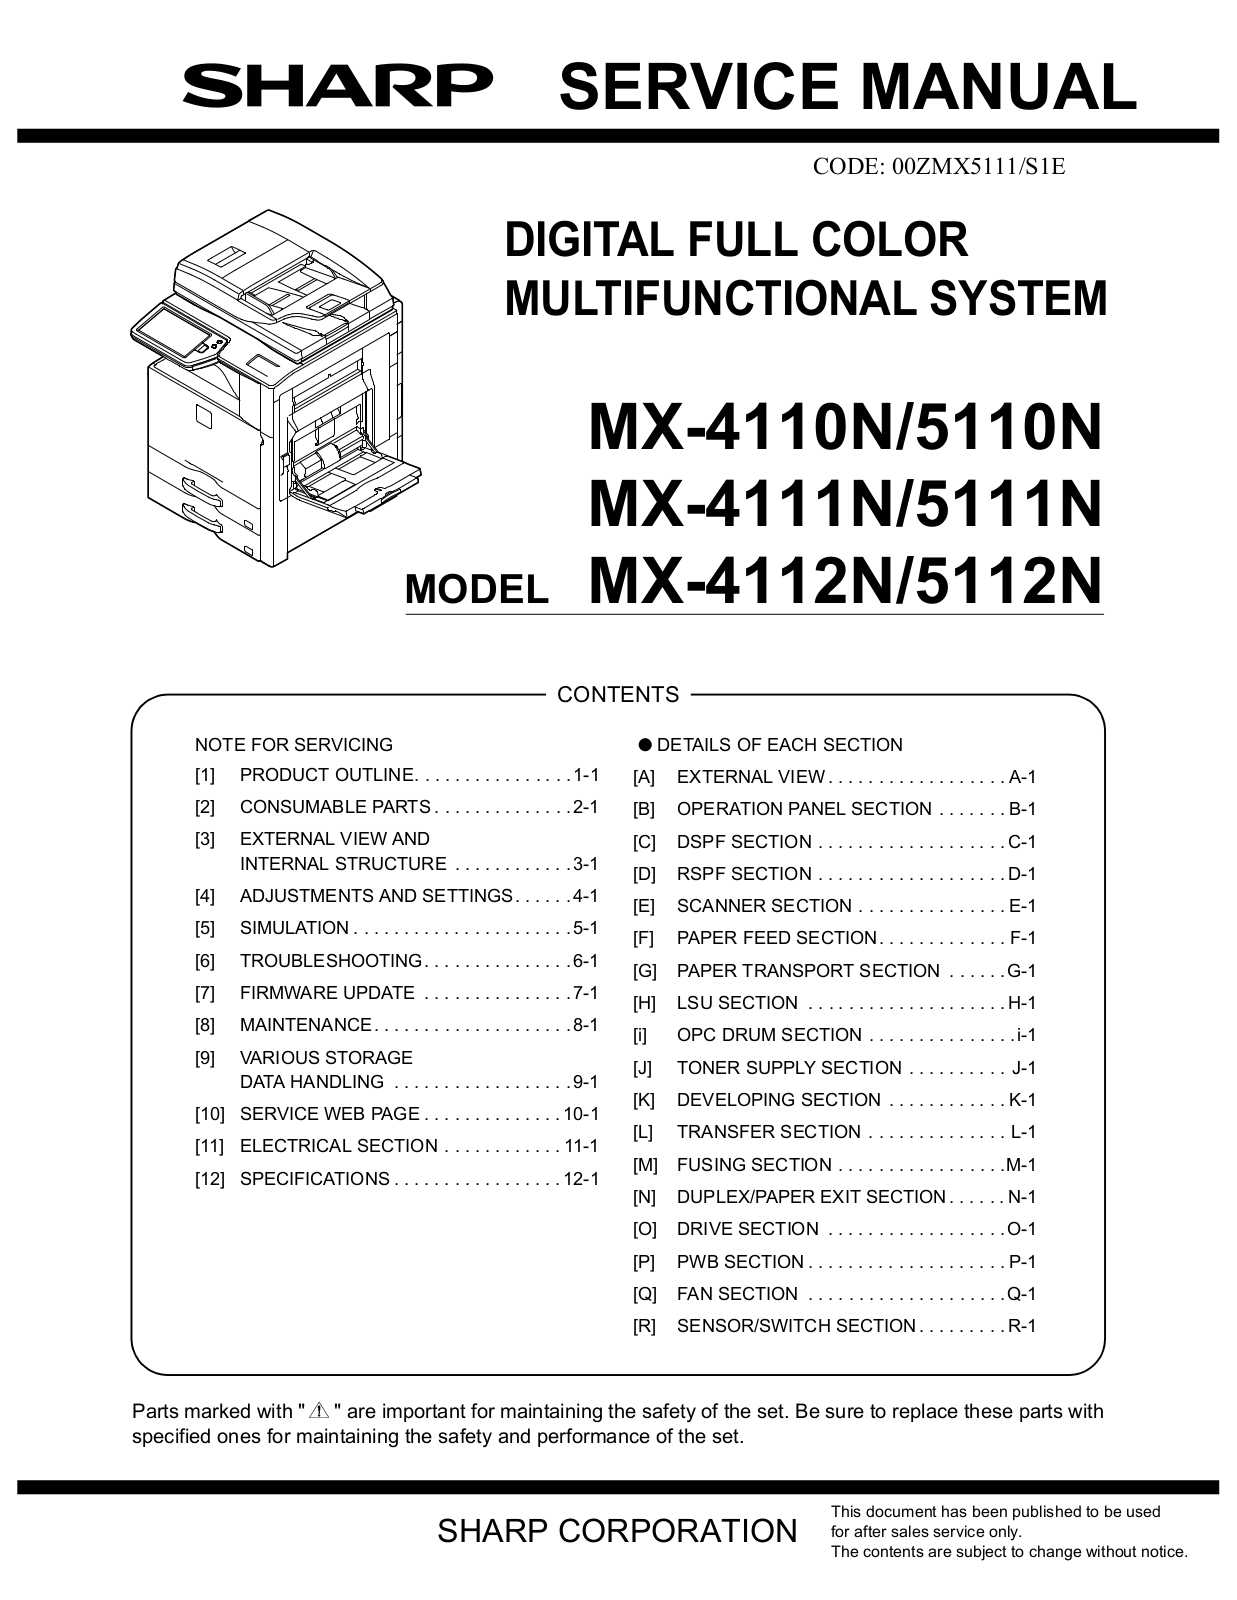 Sharp MX-4110N, MX-5110N, MX-4111N, MX-5111N, MX-4112N Service Manual